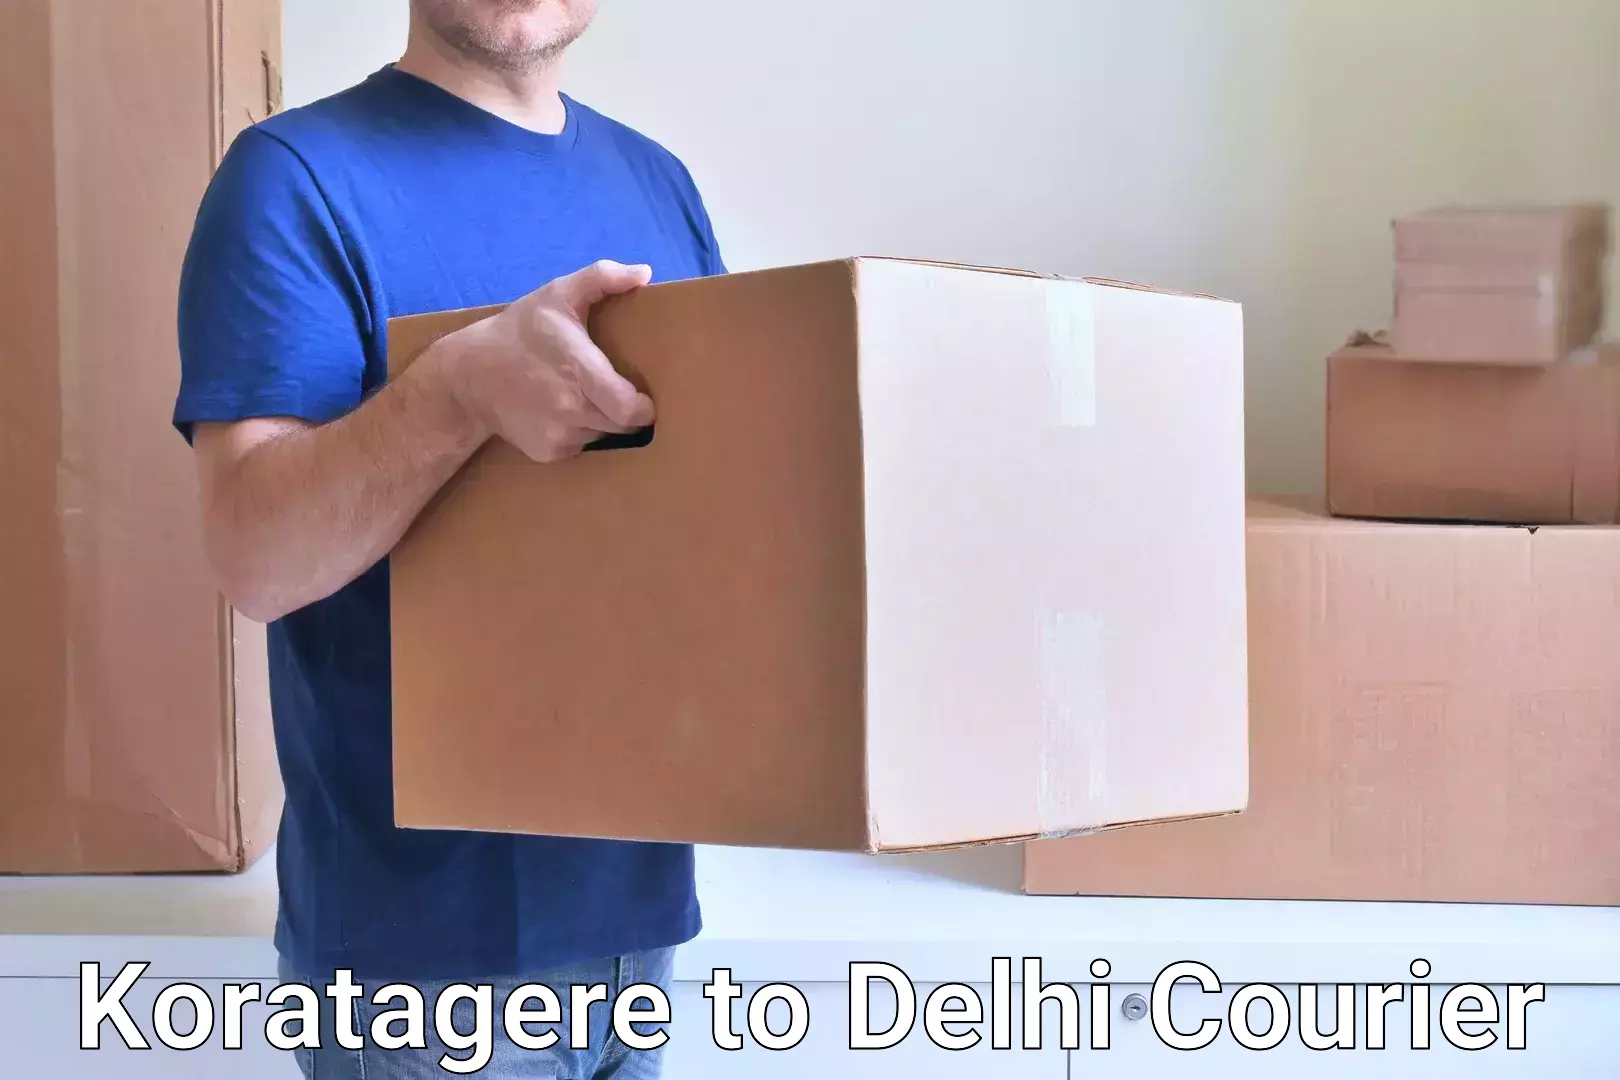 Multi-national courier services Koratagere to Jamia Millia Islamia New Delhi